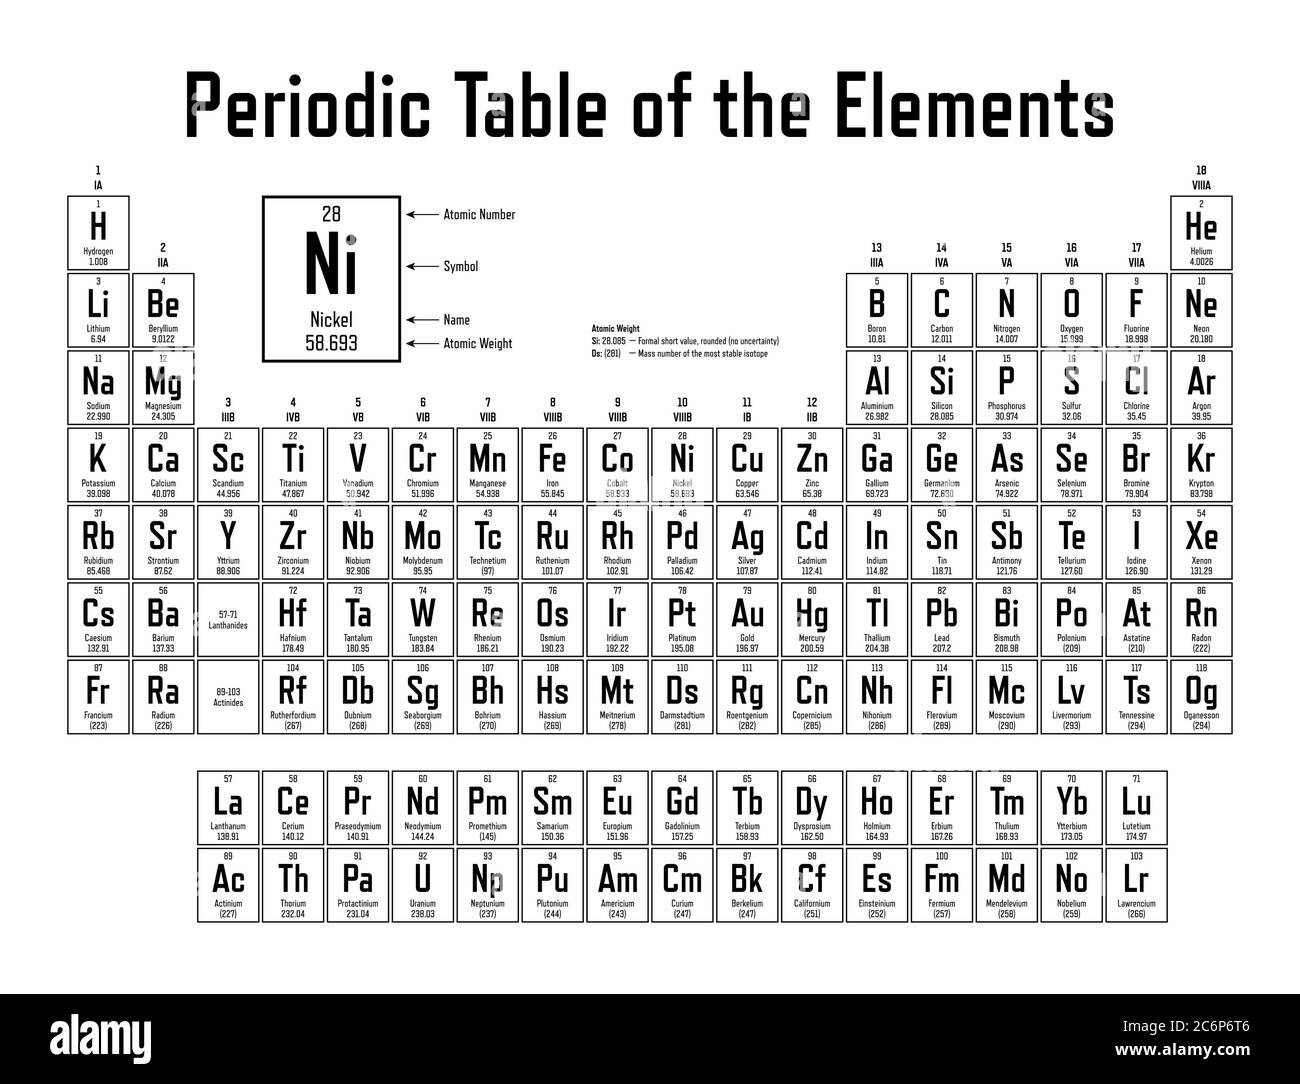 Tavola periodica degli elementi - Mostra numero atomico, simbolo, il nome,  peso atomico, elettroni per shell, stato della materia e la categoria  dell'elemento Immagine e Vettoriale - Alamy